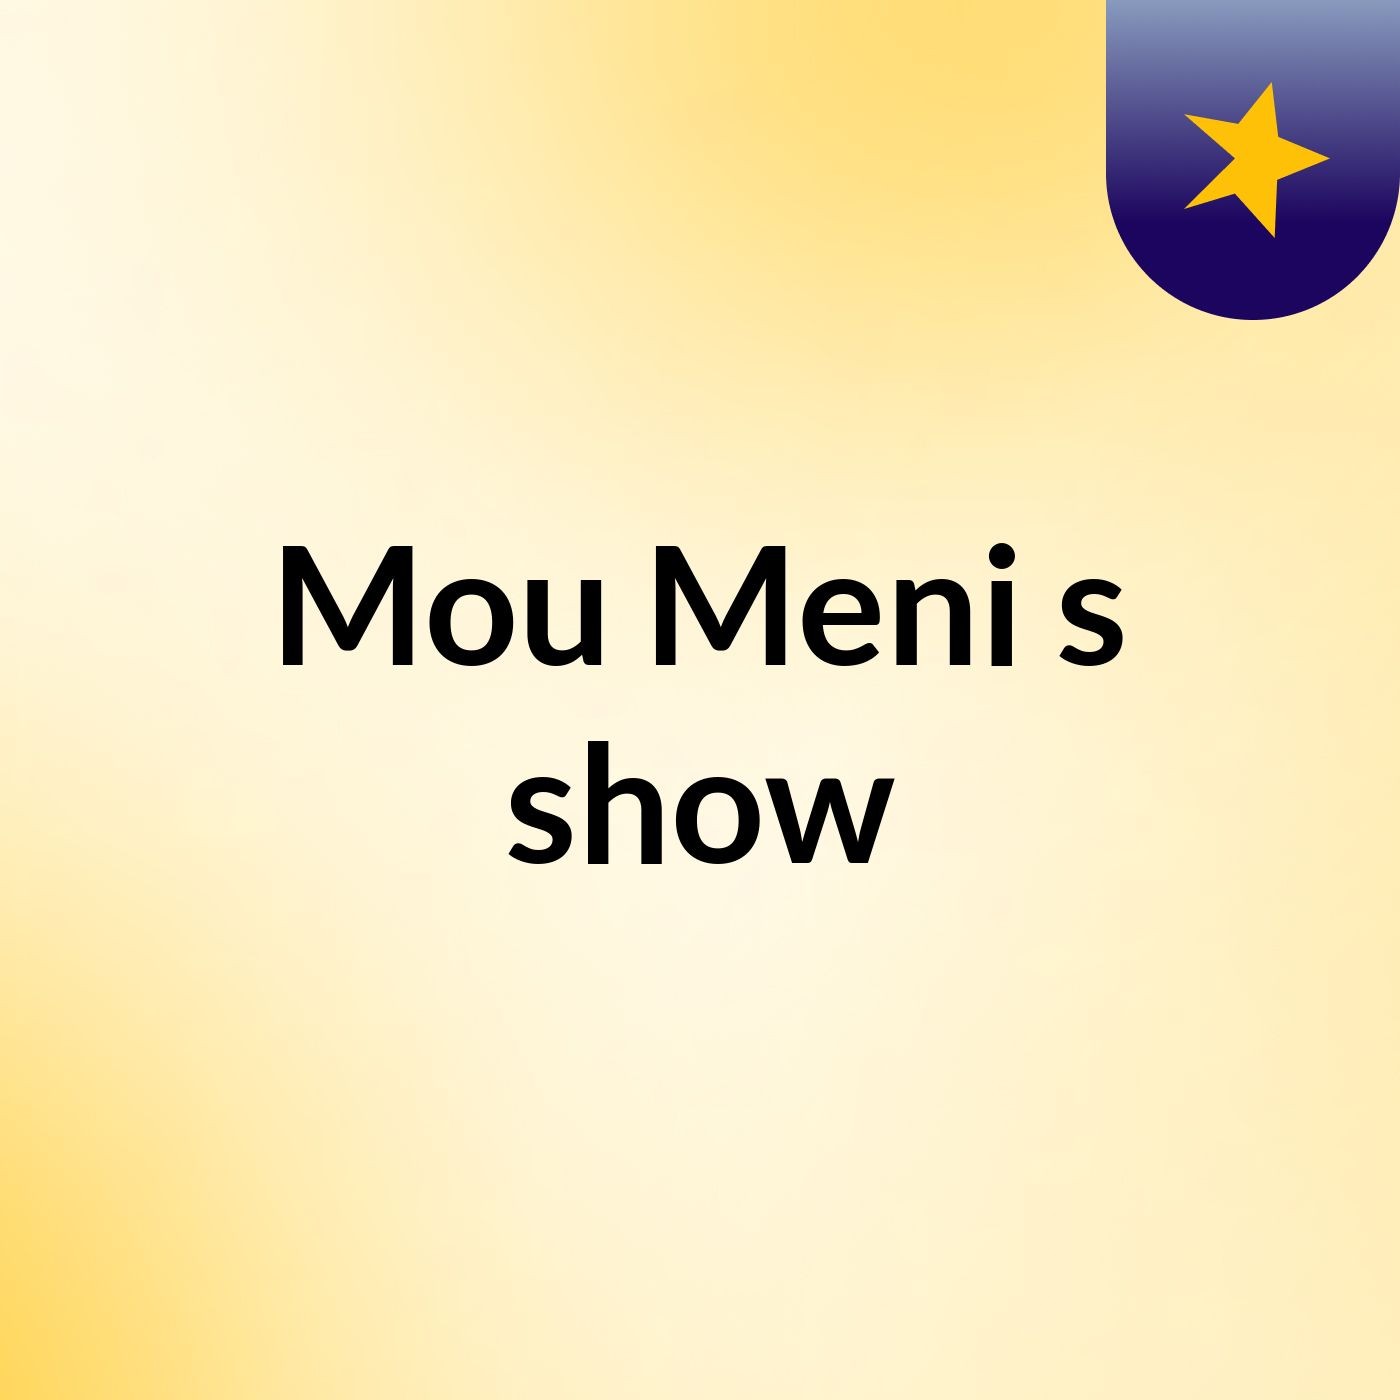 Mou Meni's show